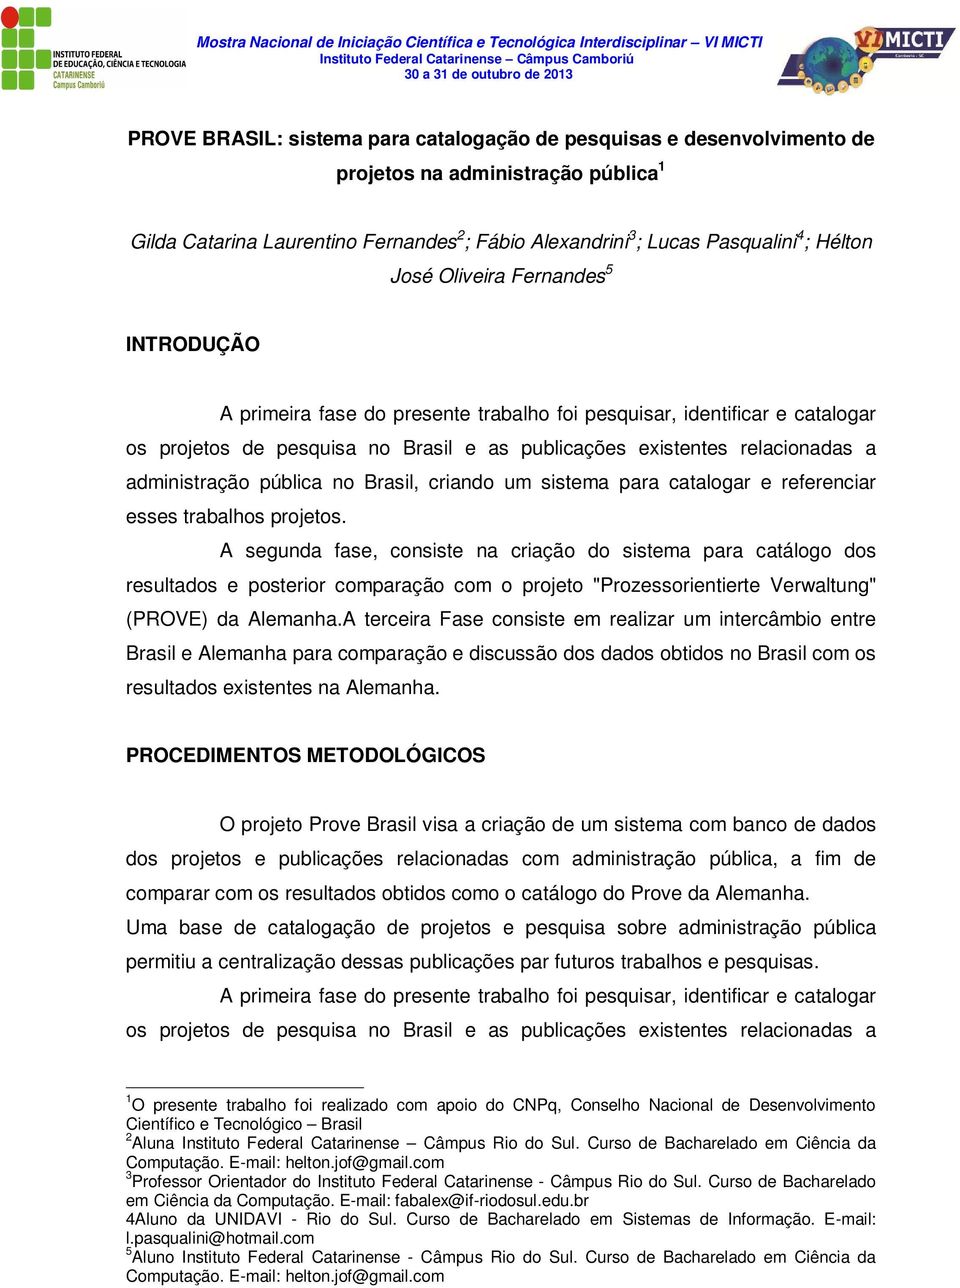 administração pública no Brasil, criando um sistema para catalogar e referenciar esses trabalhos projetos.